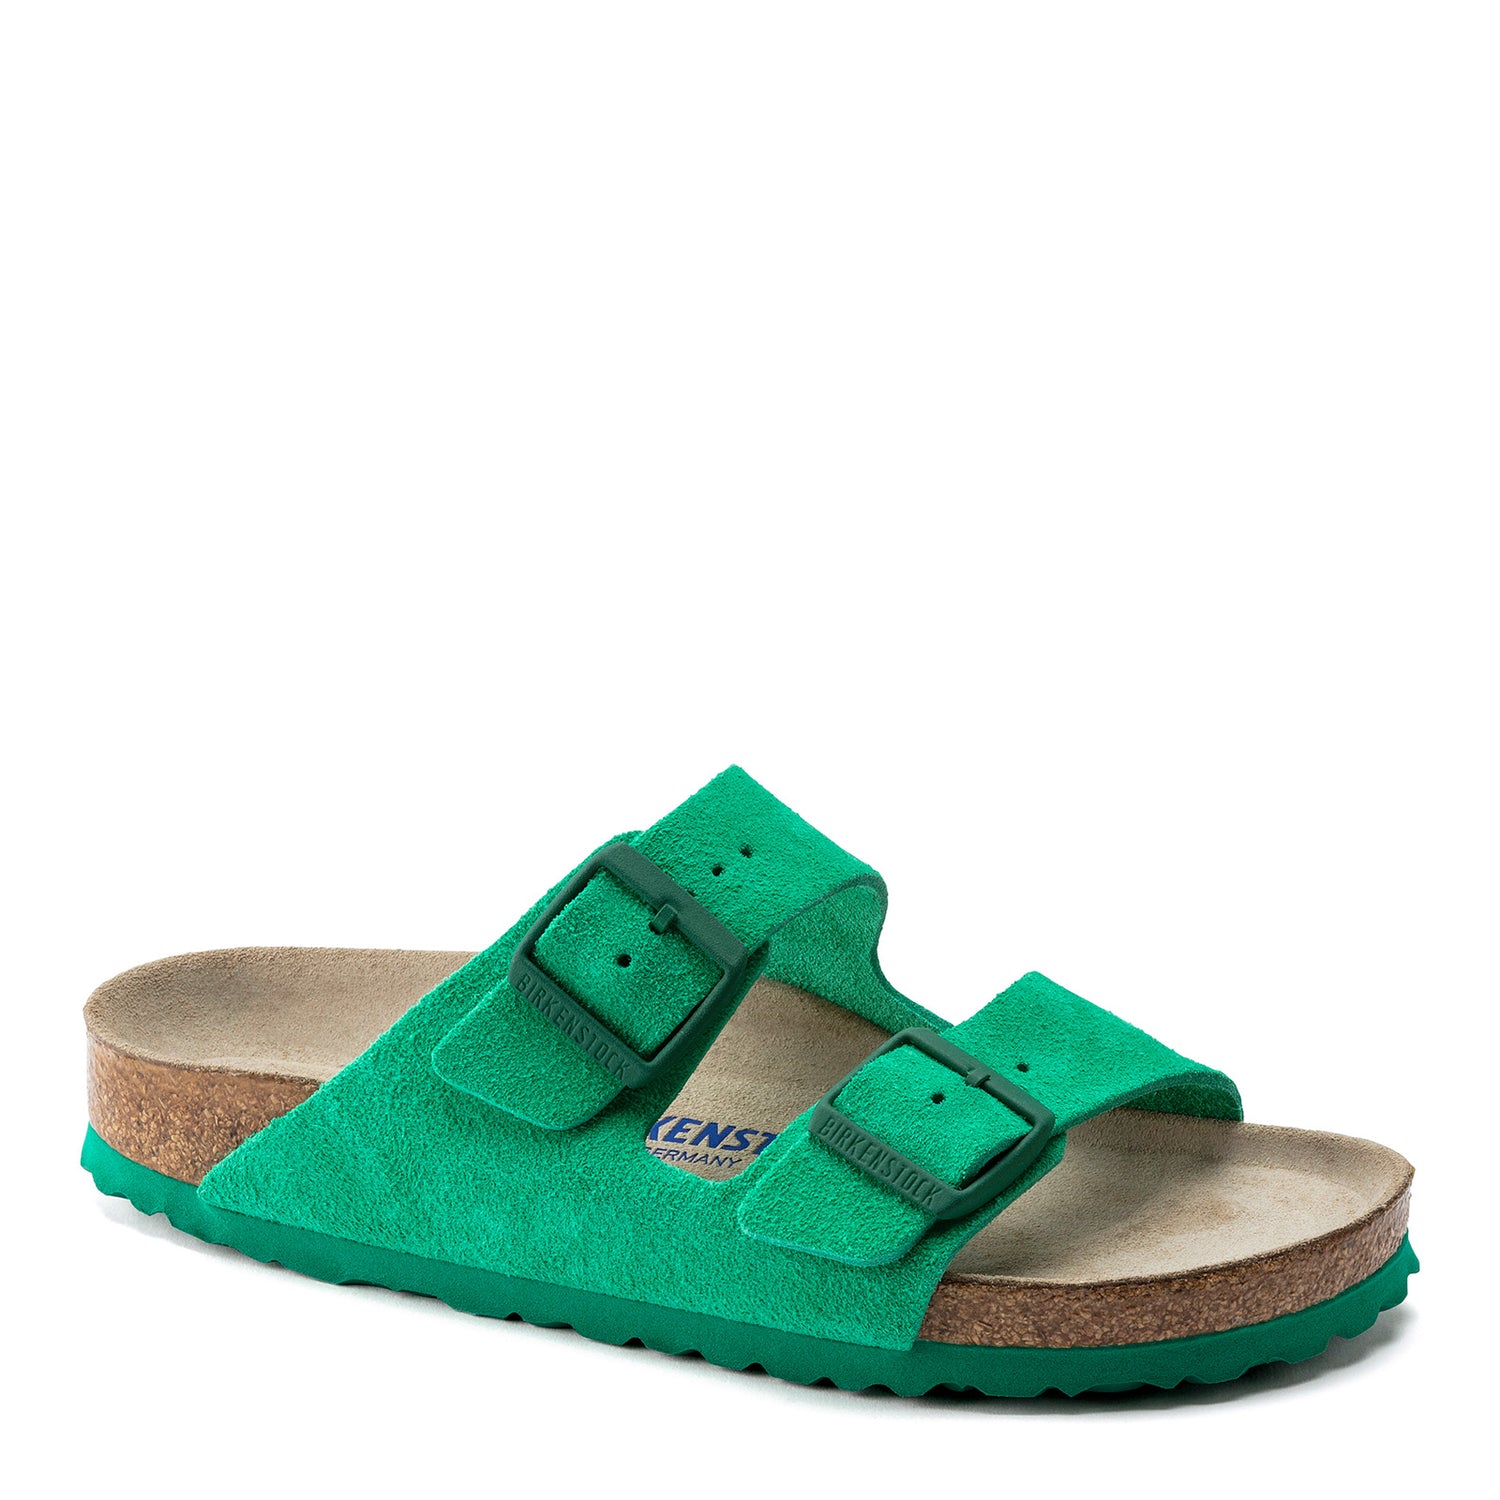 Peltz Shoes  Women's Birkenstock Arizona Soft Footbed Sandal - Narrow Width BOLD GREEN 1022 372 N